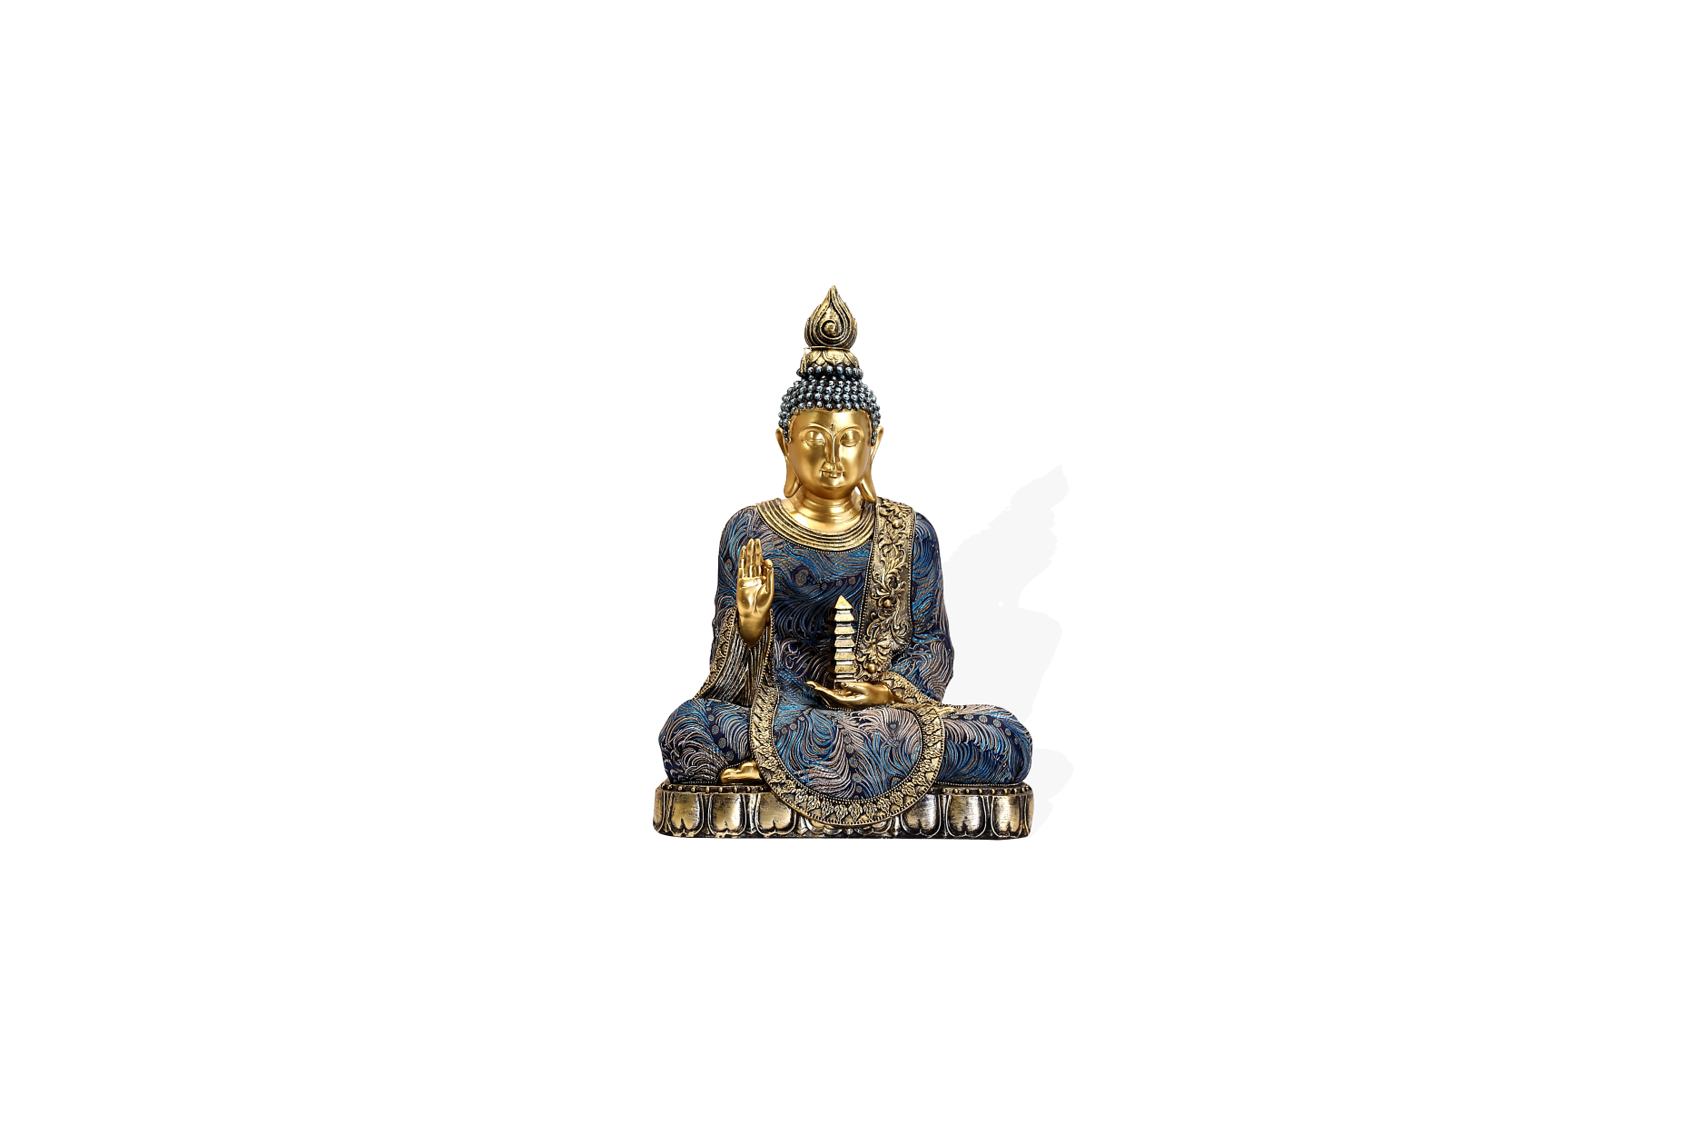 Ornate Buddha in blue